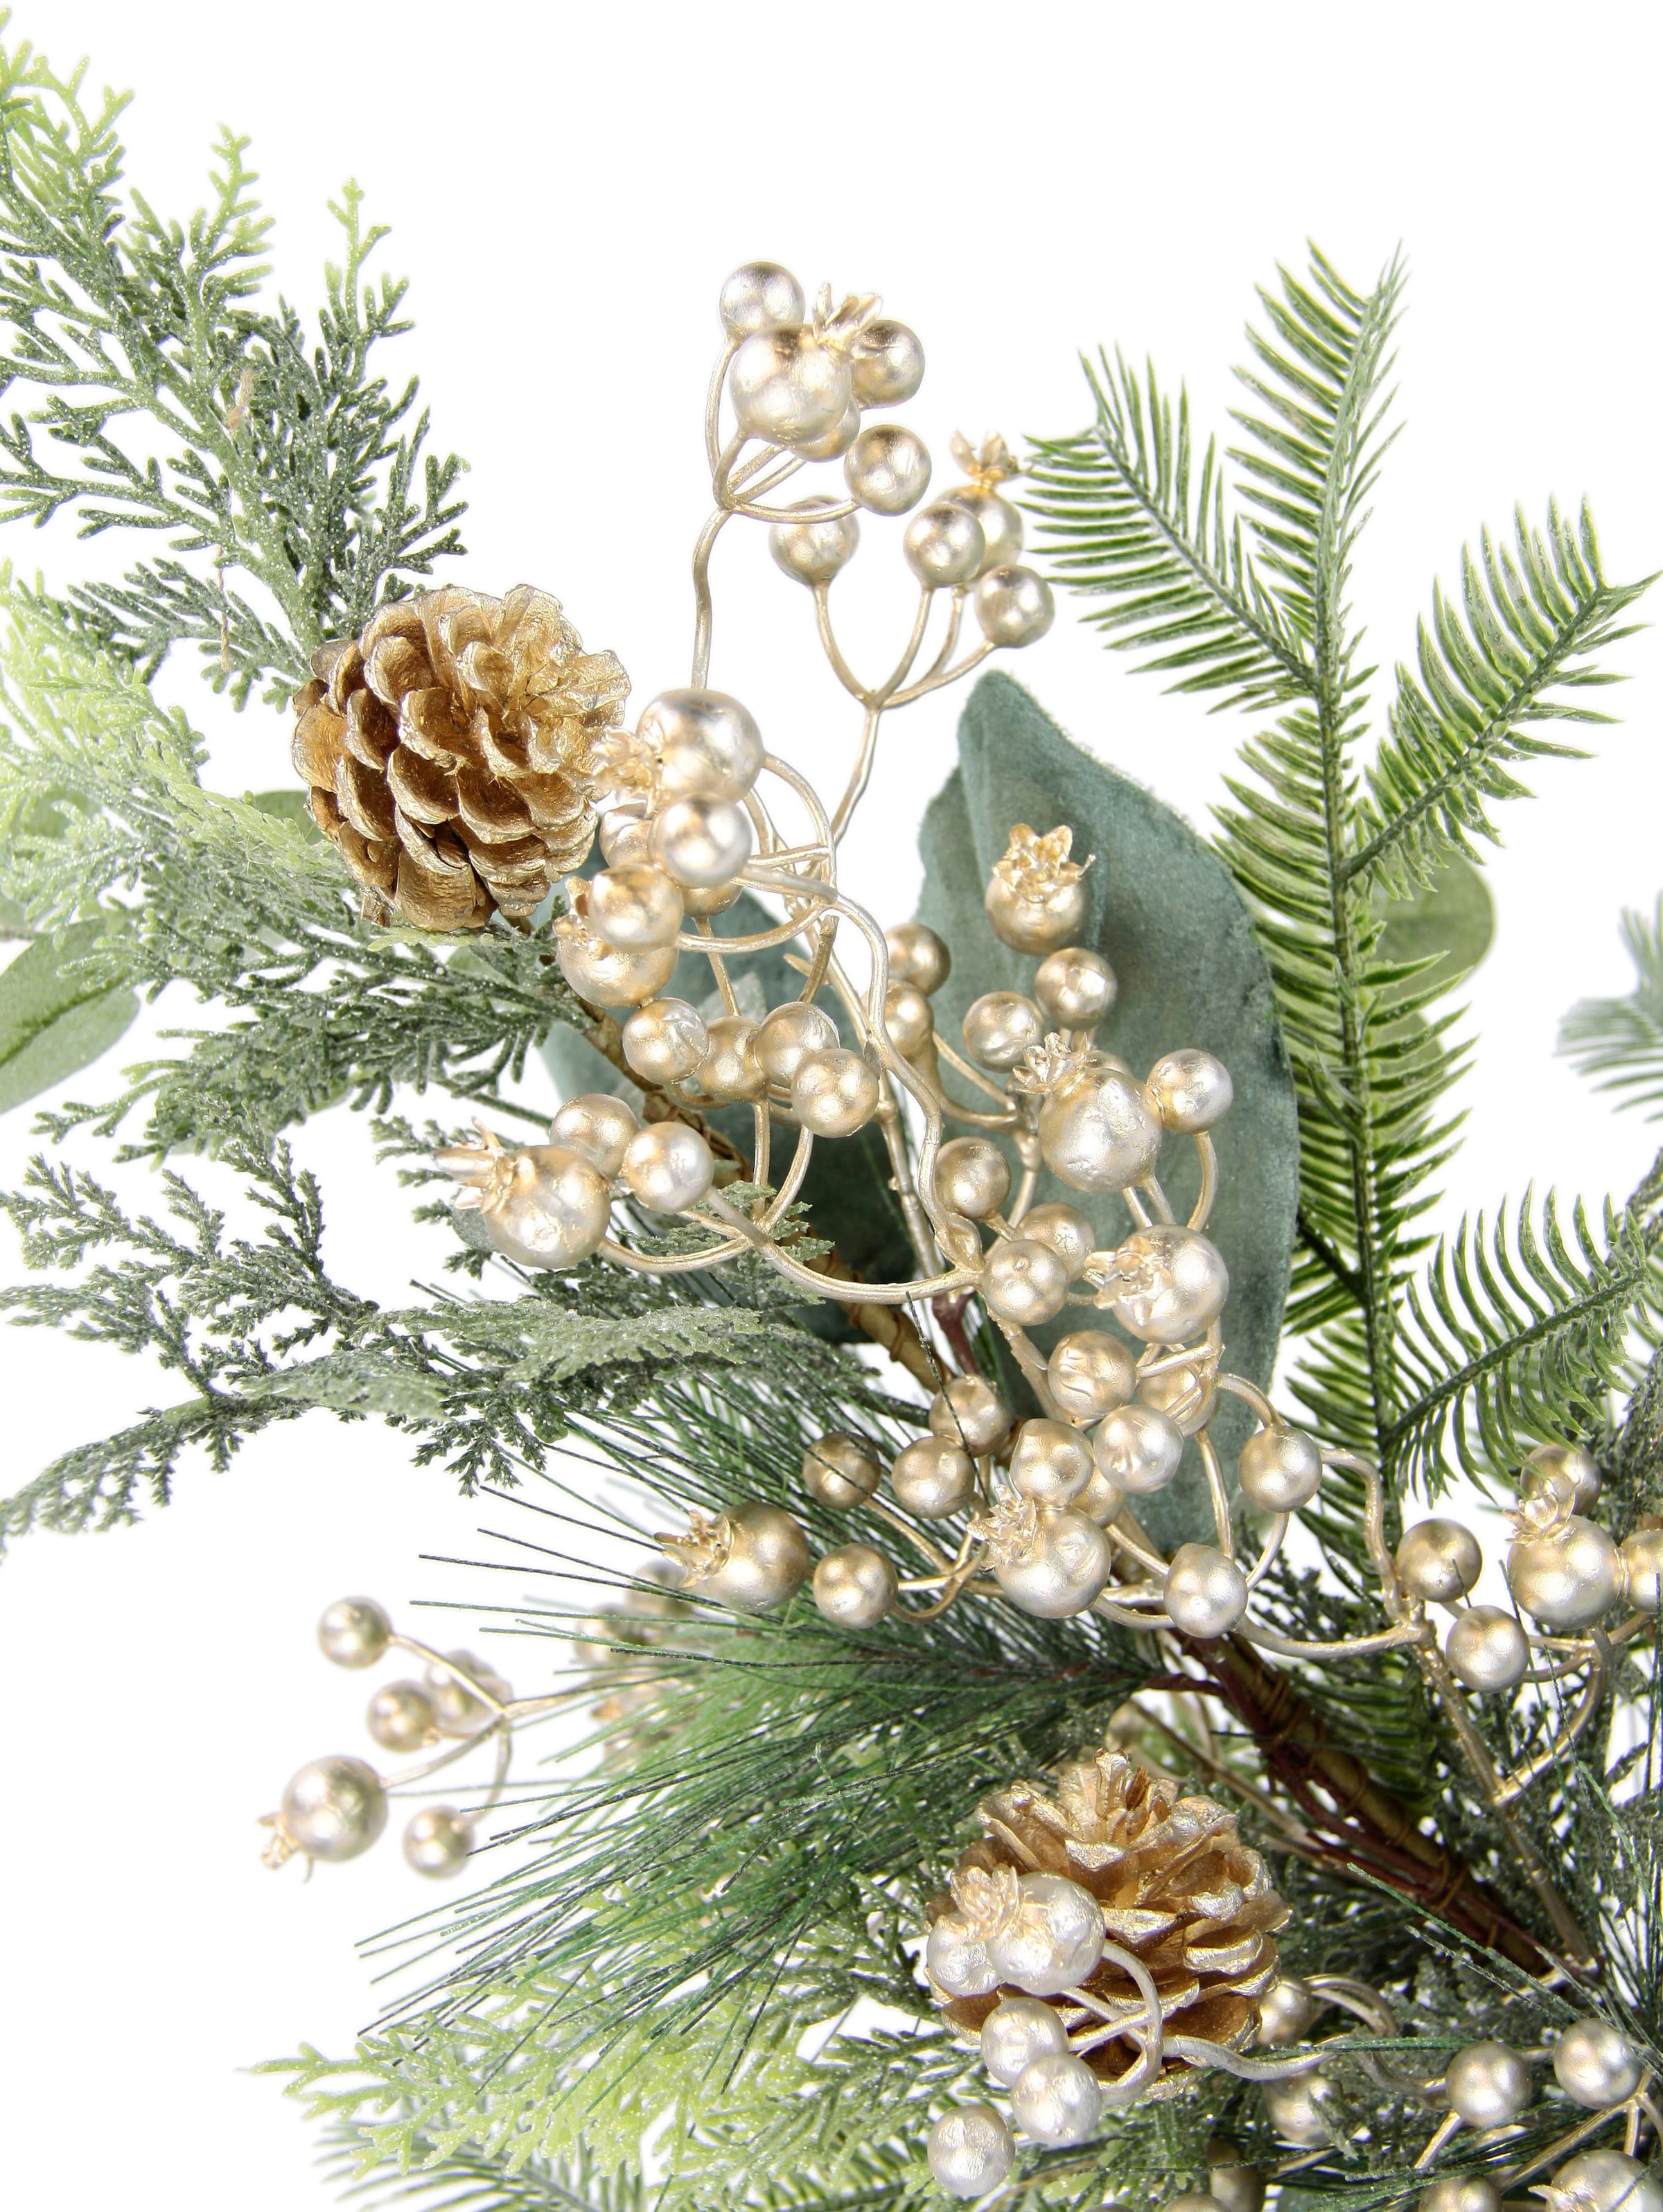 I.GE.A. Winterliche Kunstpflanze »Weihnachtsgesteck im Topf aus Jute, Weihnachtsdeko«, mit Beeren, Eukalyptuszweigen, Koniferen und Zapfen